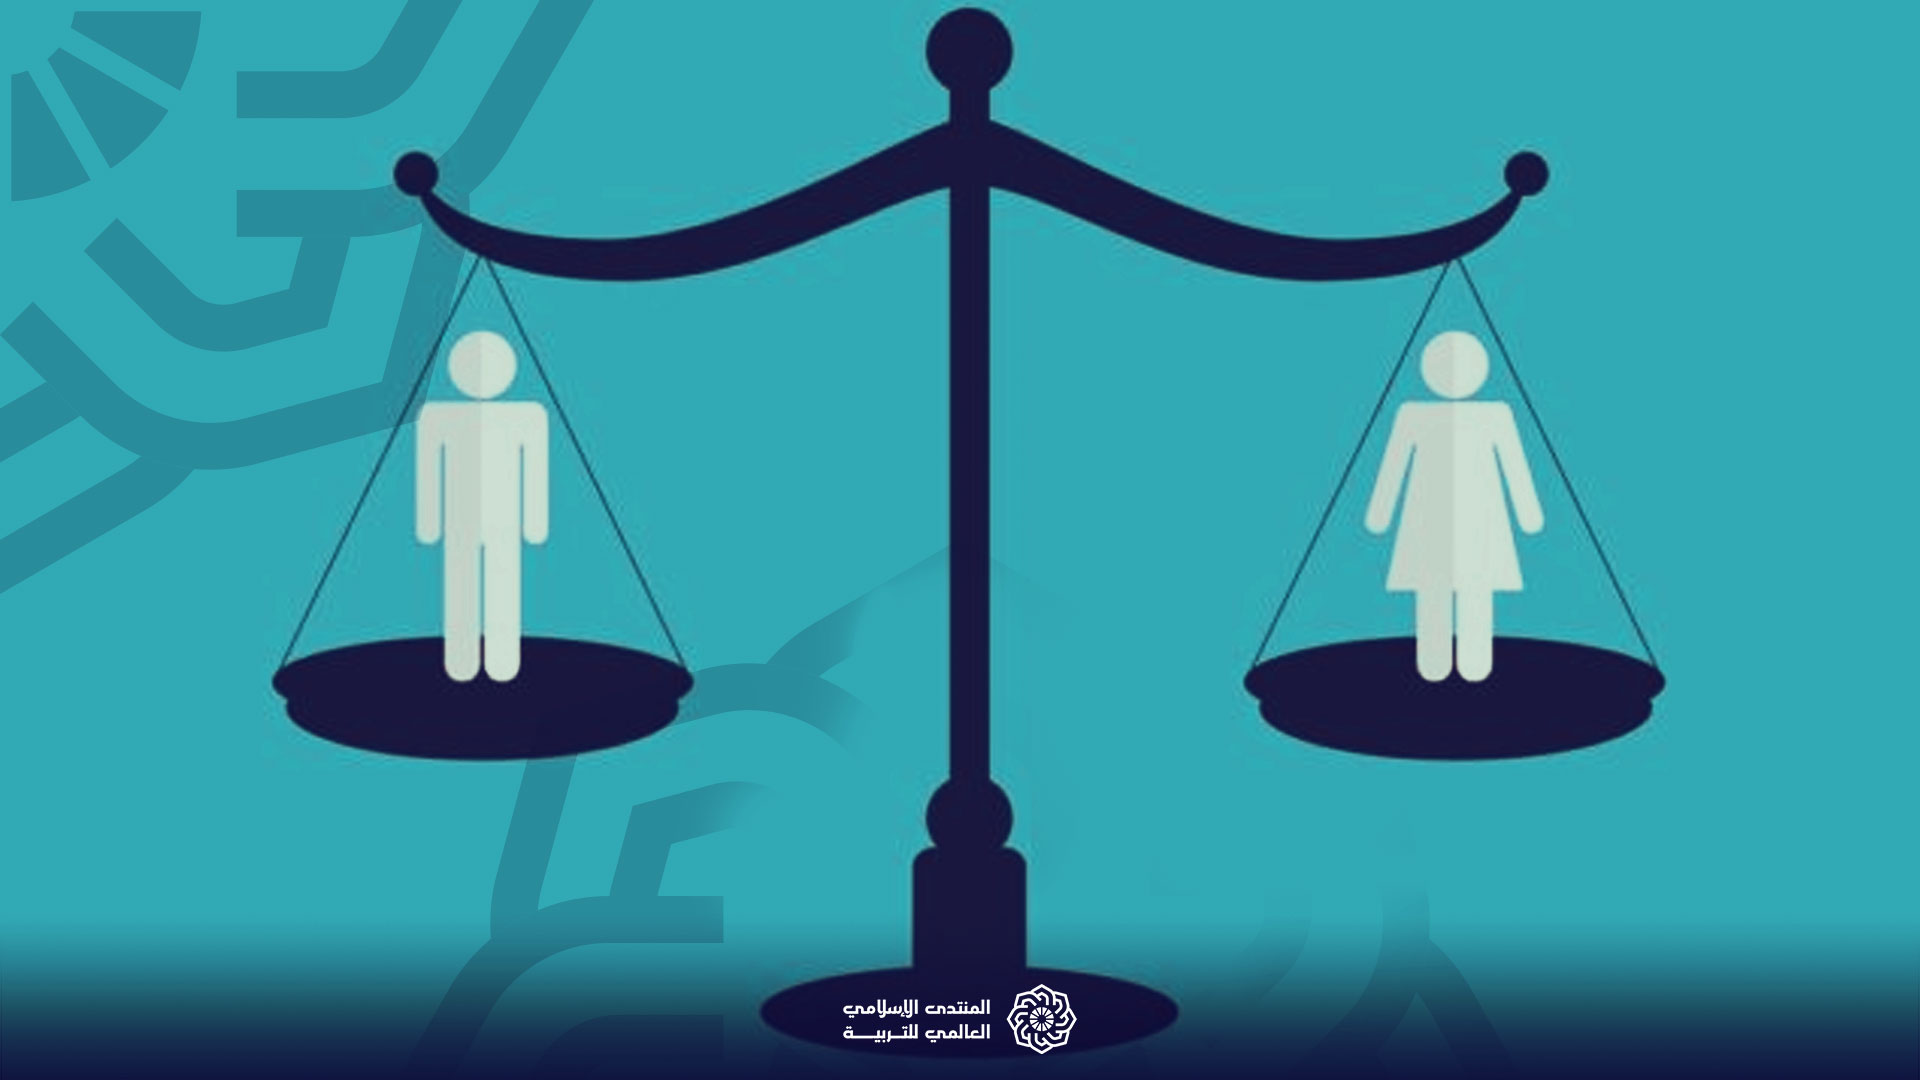 المساواة بين الرجل والمرأة رؤية إسلامية المنتدى الإسلامي العالمي للتربية